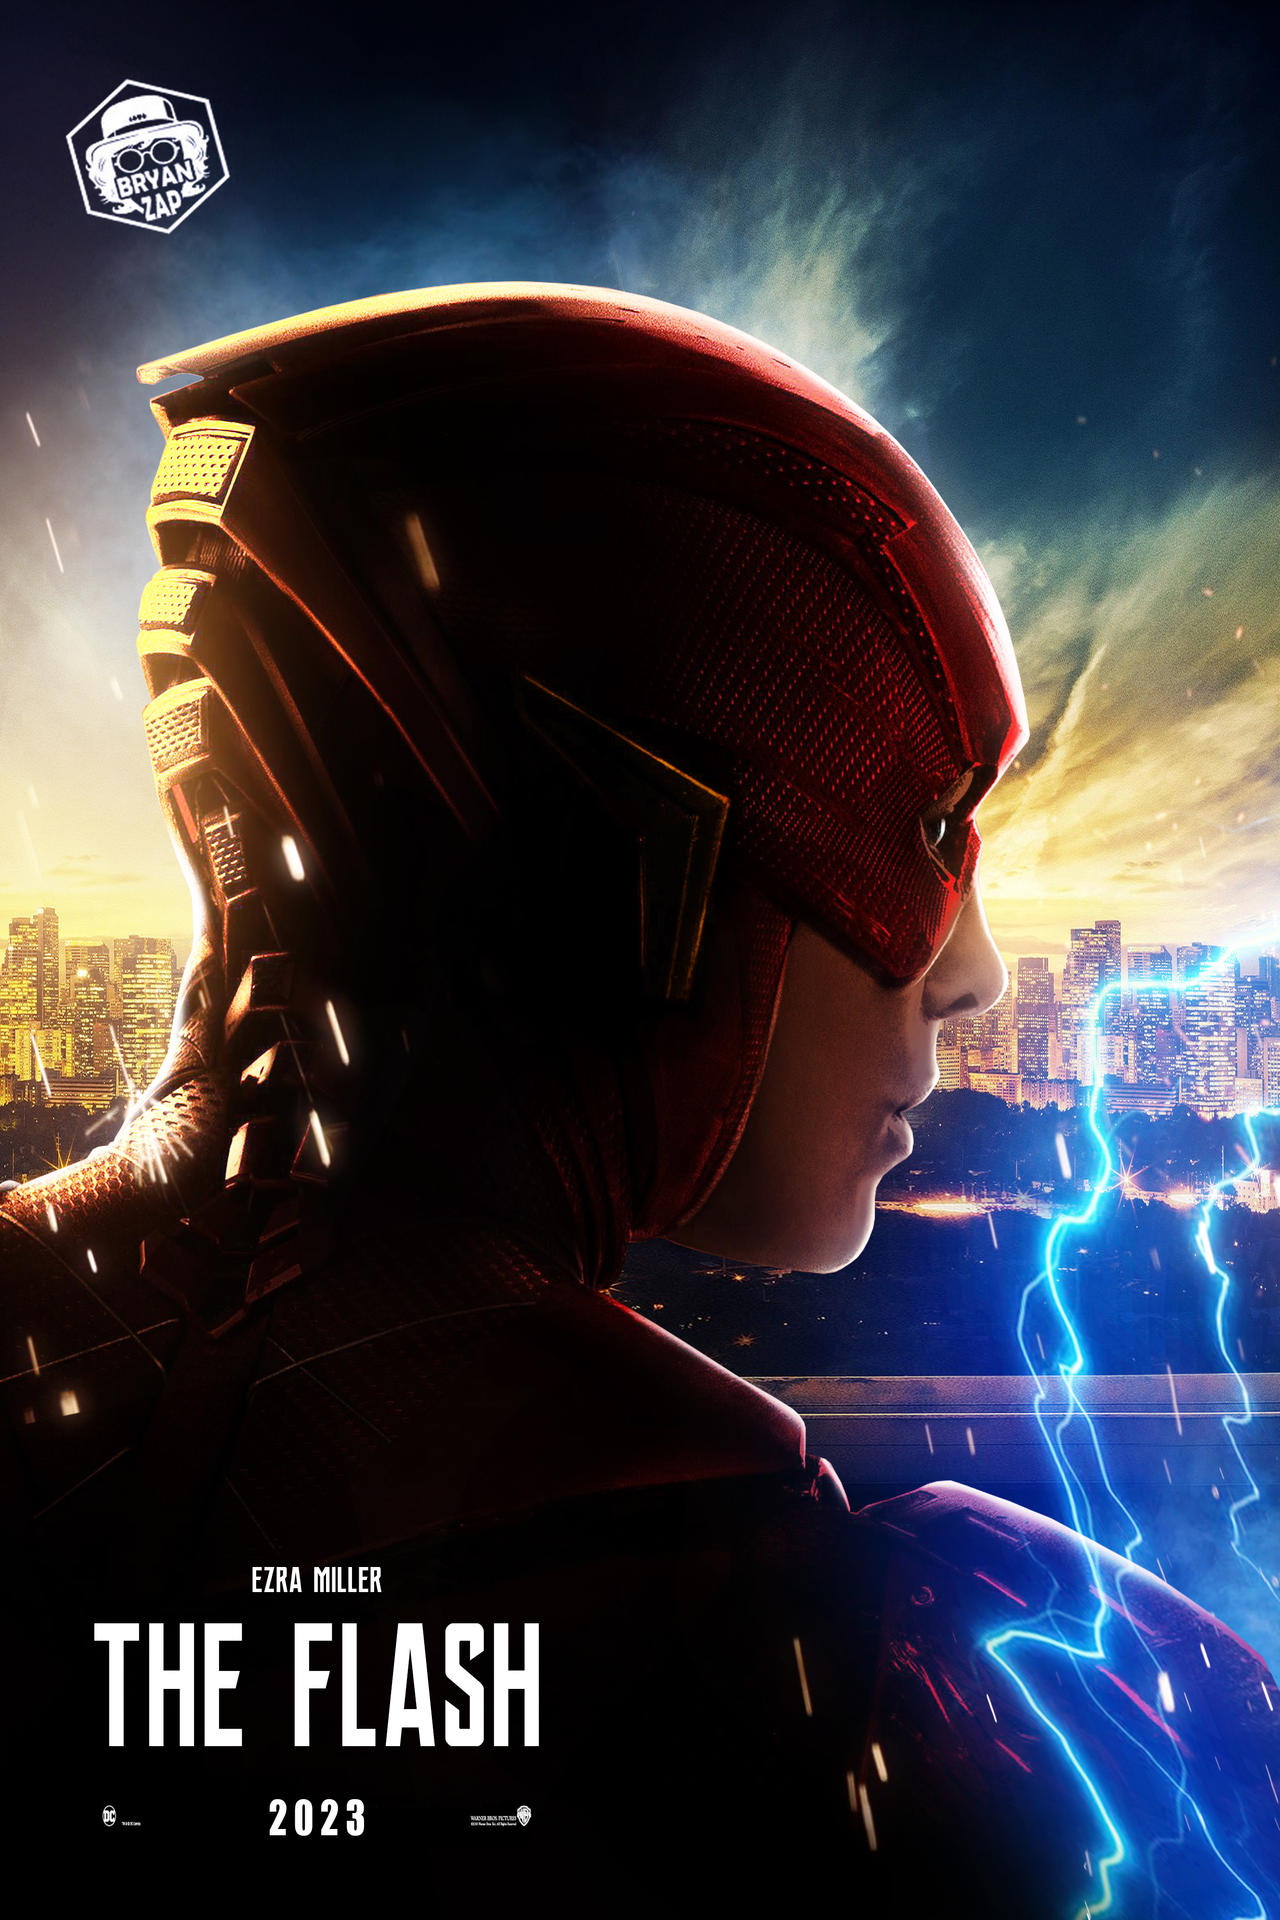 The Flash Teaser Movie Poster by Bryanzap on DeviantArt